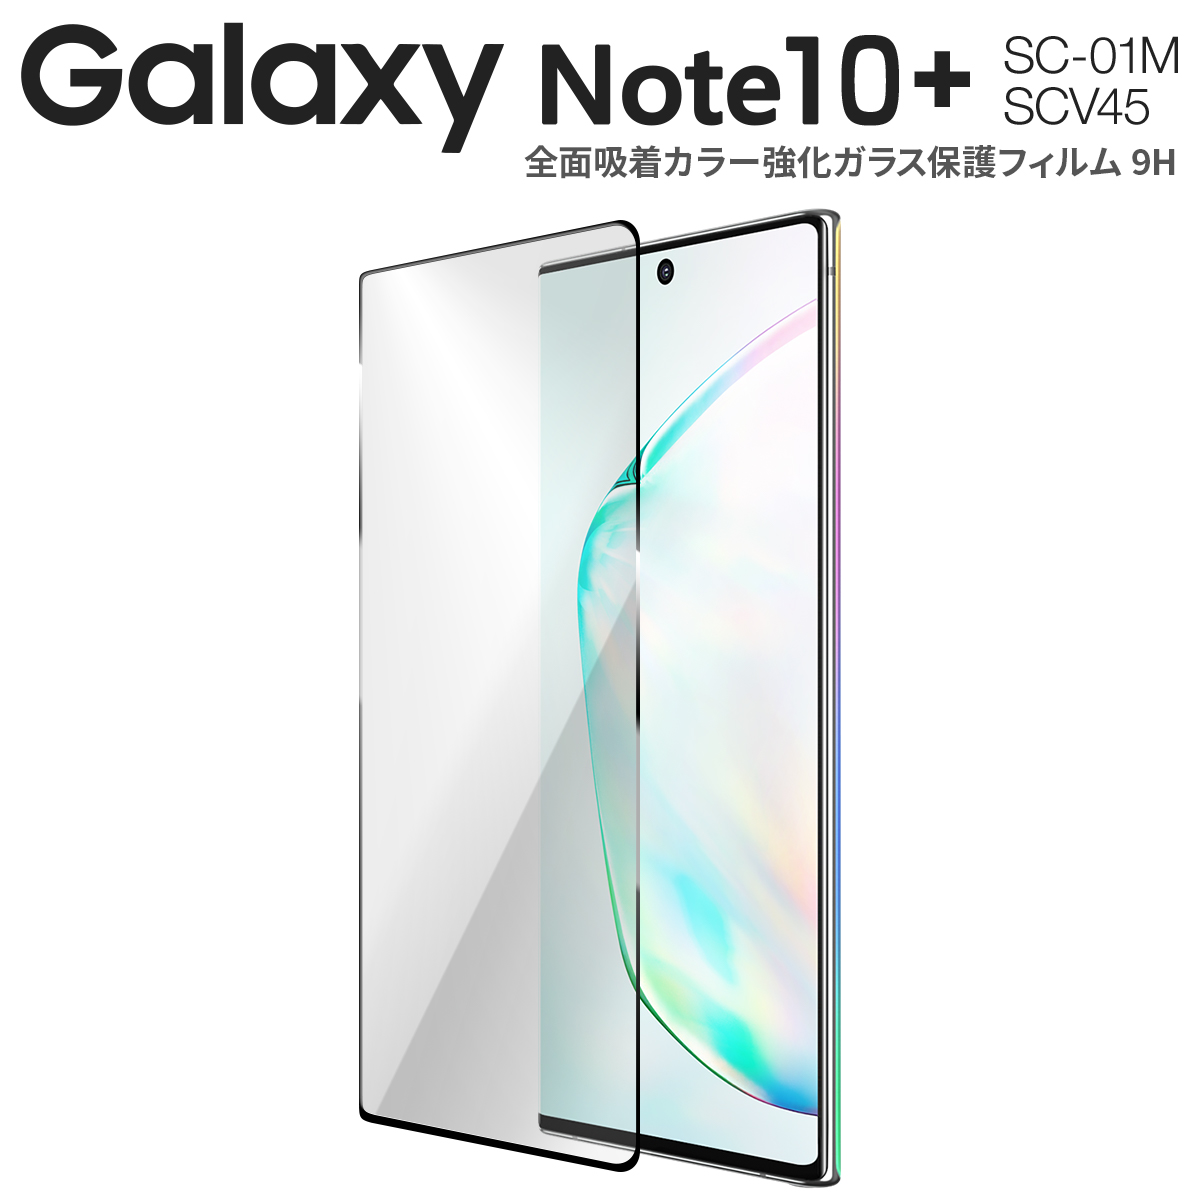 全面吸着カラー強化ガラス保護フィルム 9H Galaxy Note10+ SC-01M 新作送料無料 SCV45 g-n10pls-fulglue9h 1 即納最大半額 ネコポス対応 M便